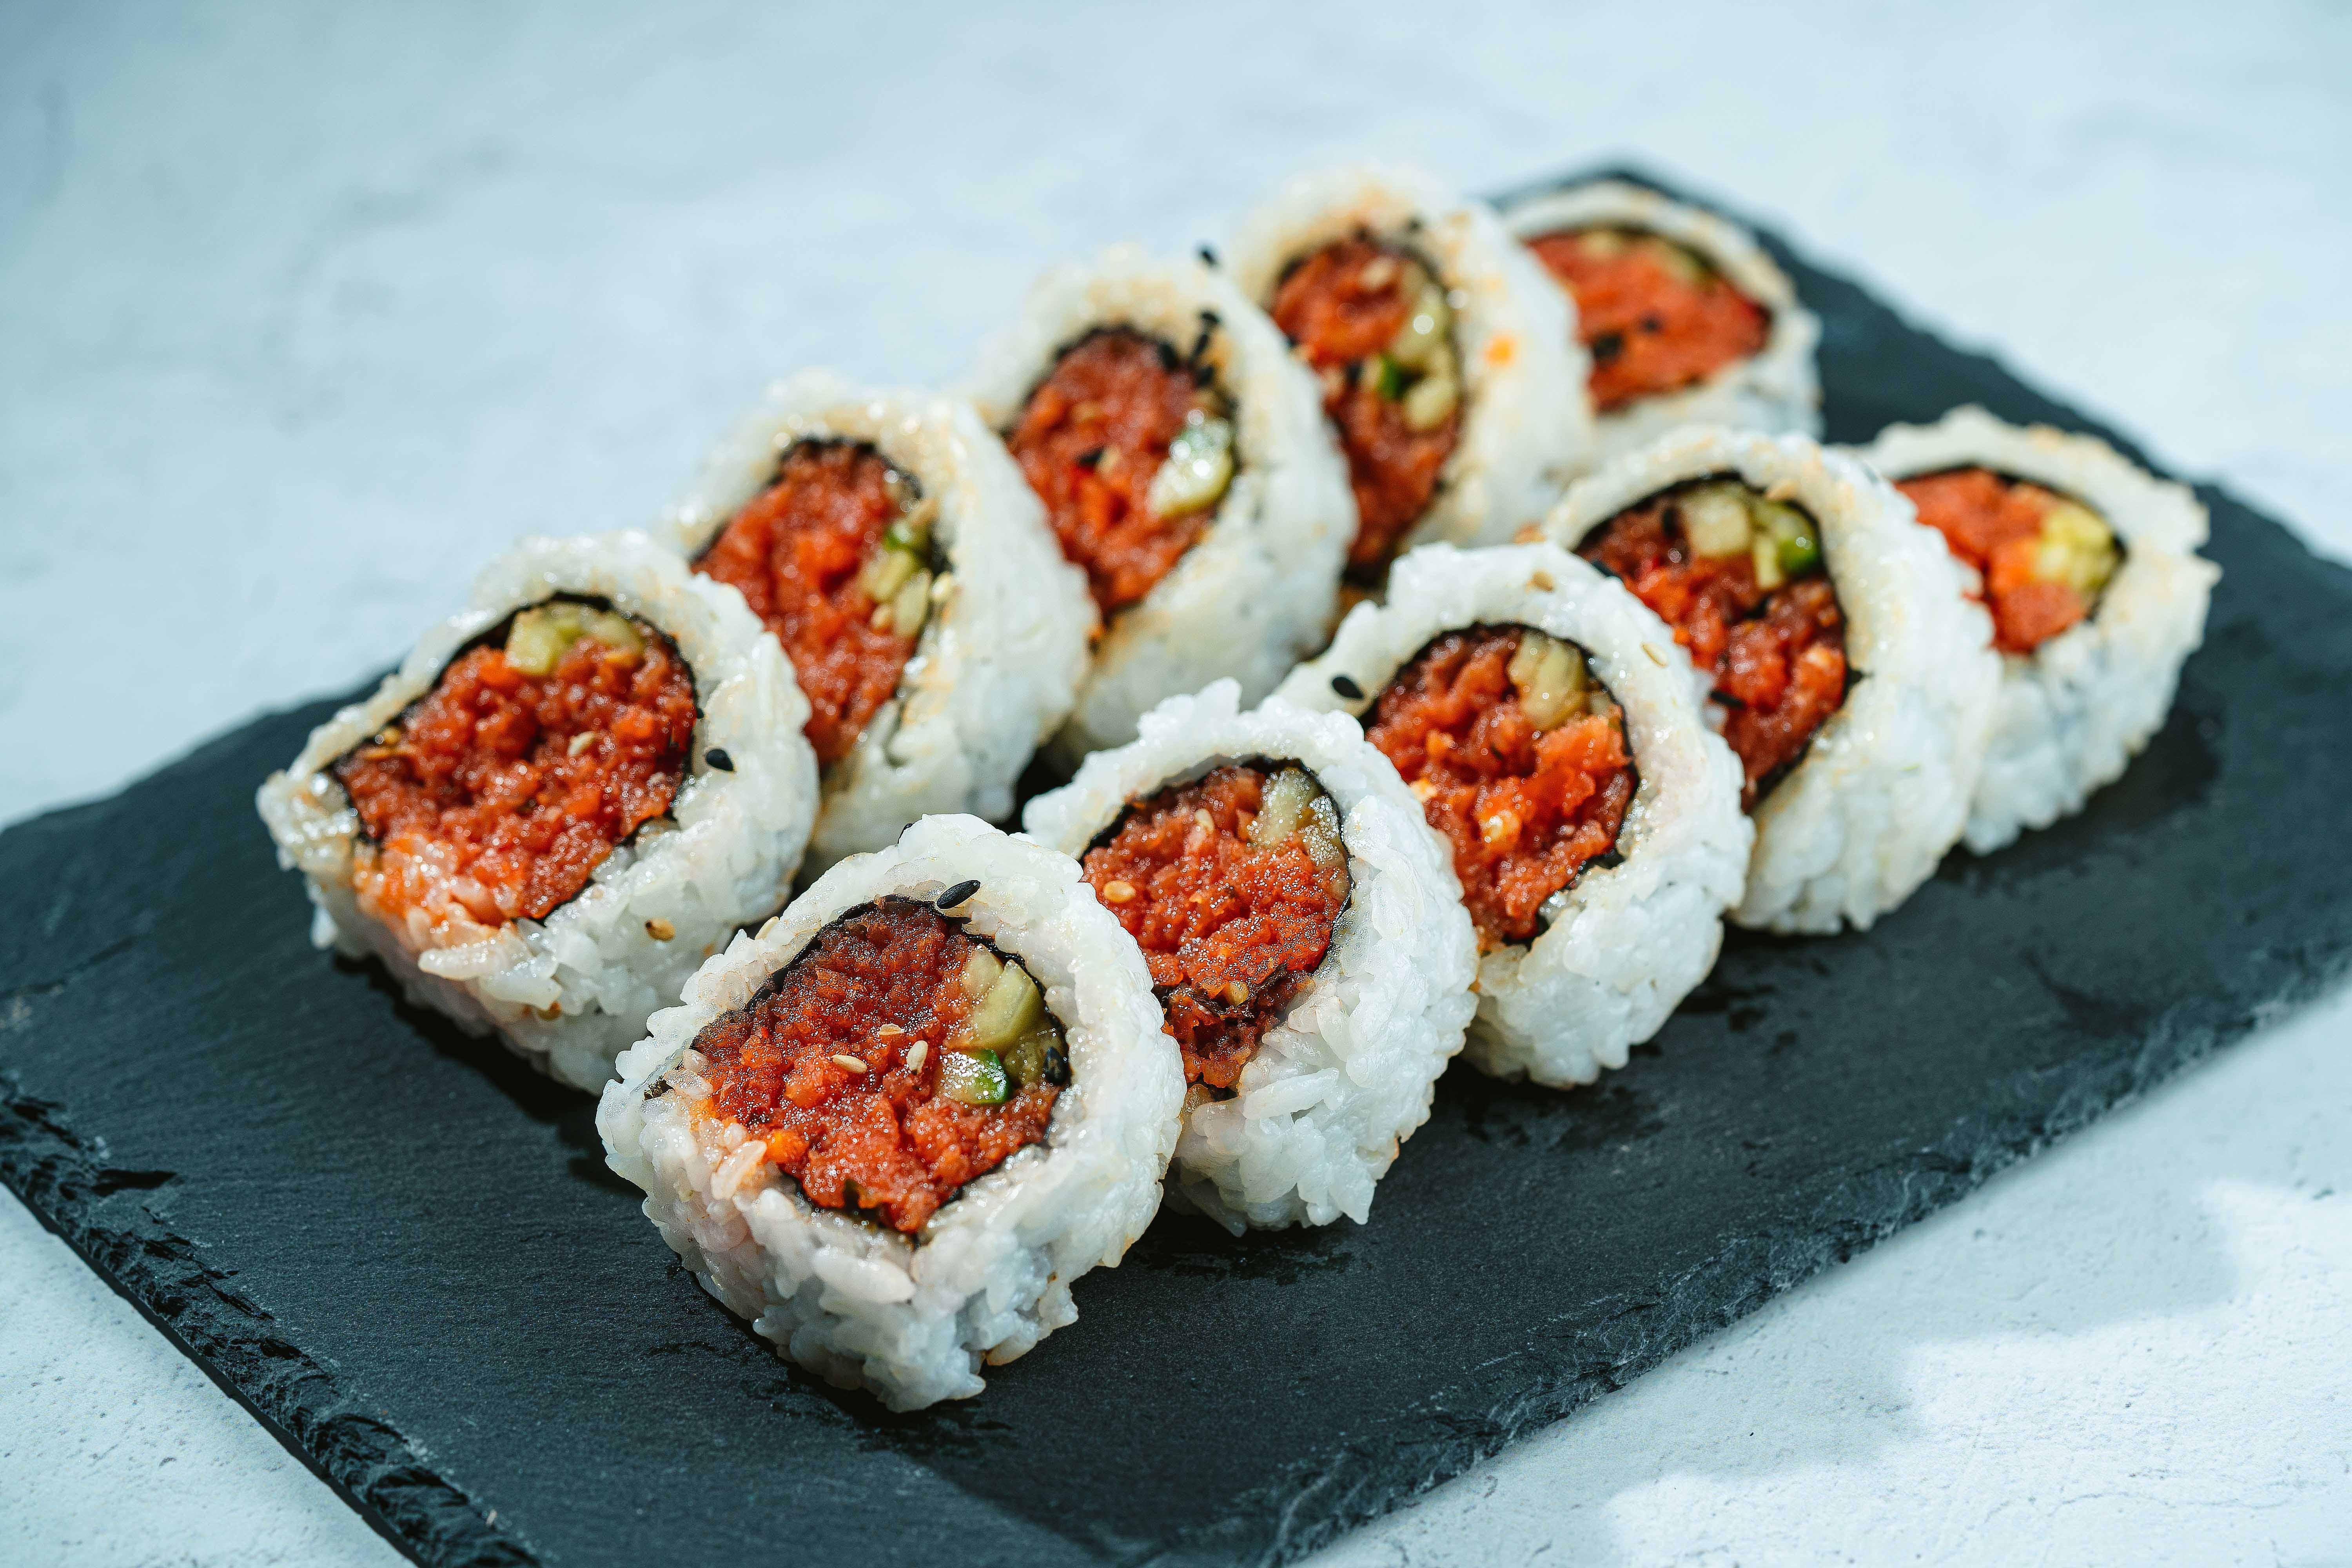 R5. Spicy tuna roll